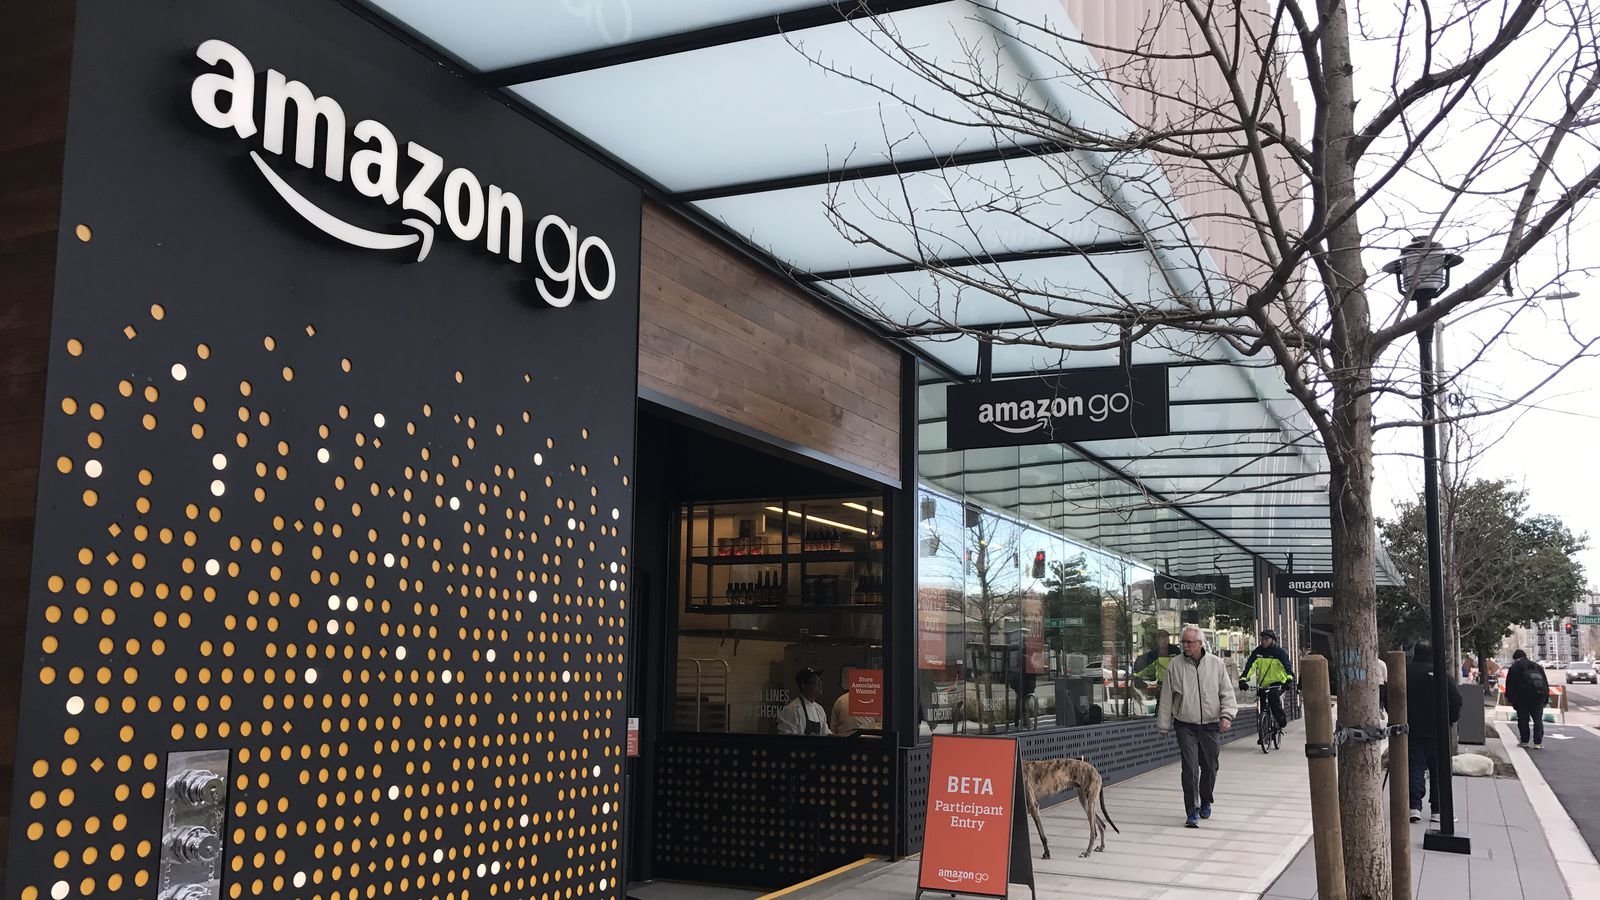 Πρεμιέρα για το πρώτο σουπερμάρκετ της Amazon στις ΗΠΑ χωρίς ταμεία